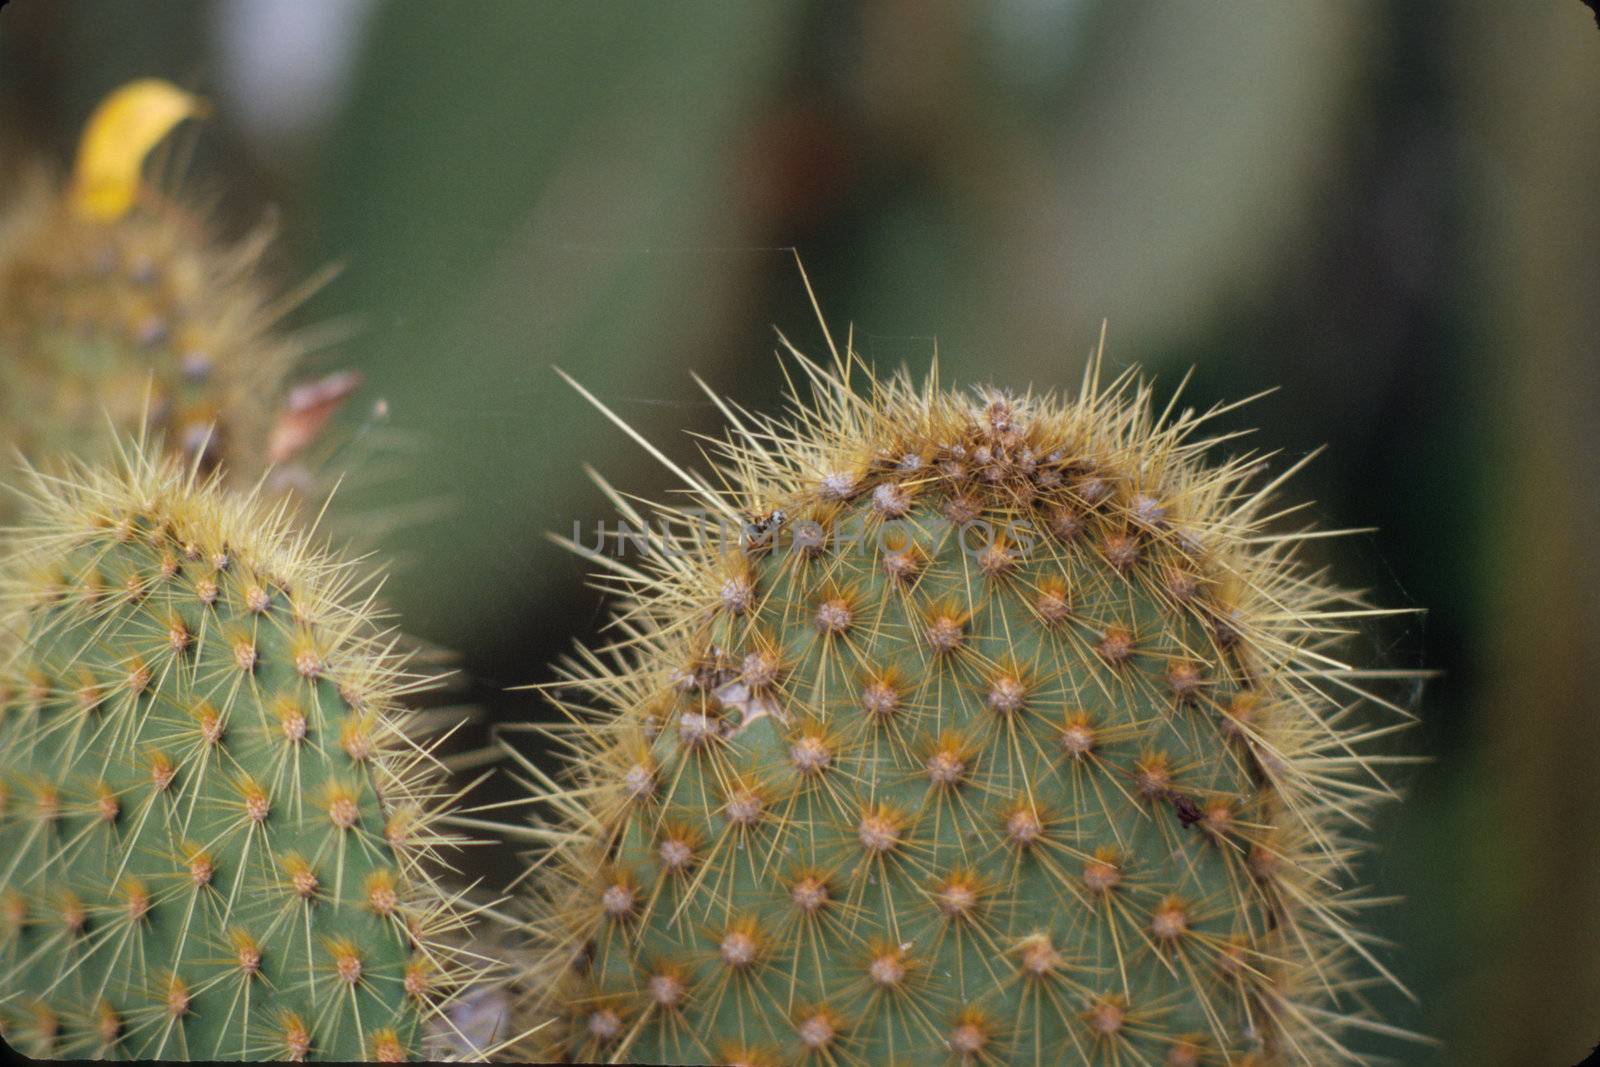 Close up photo of spiky cactus leaves, Ecuador